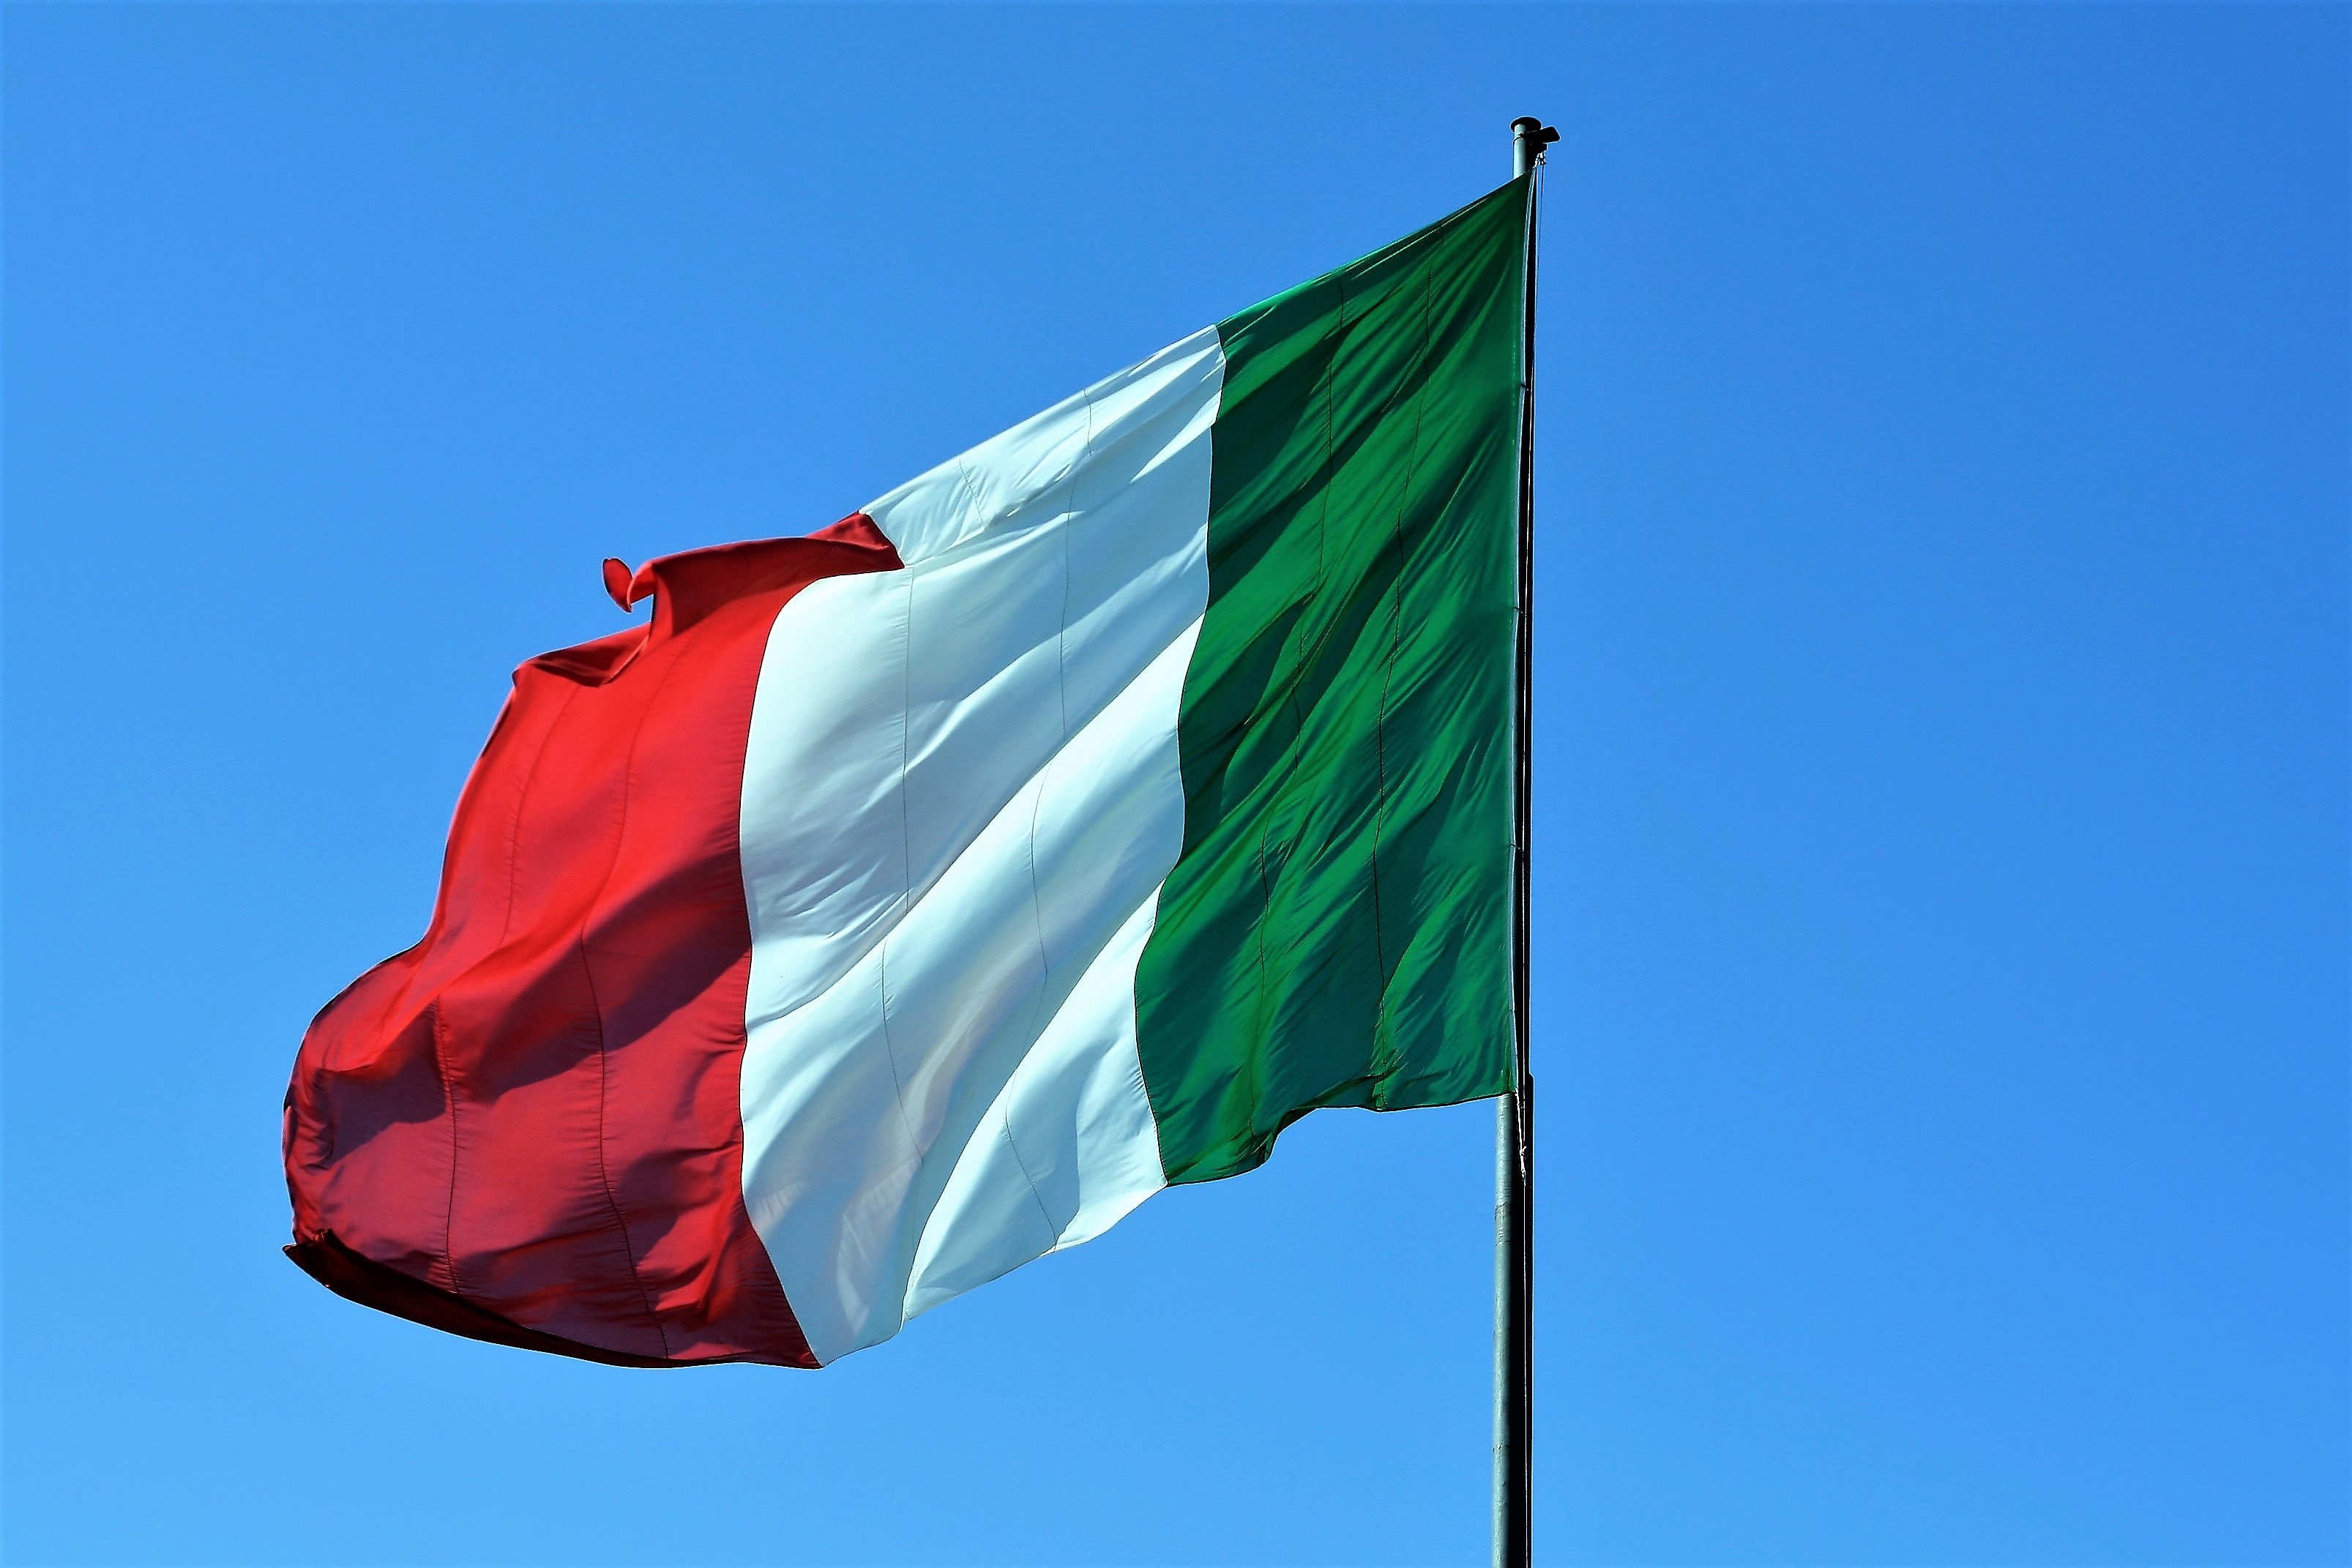 Bandiera Italiana © Antonello Serino